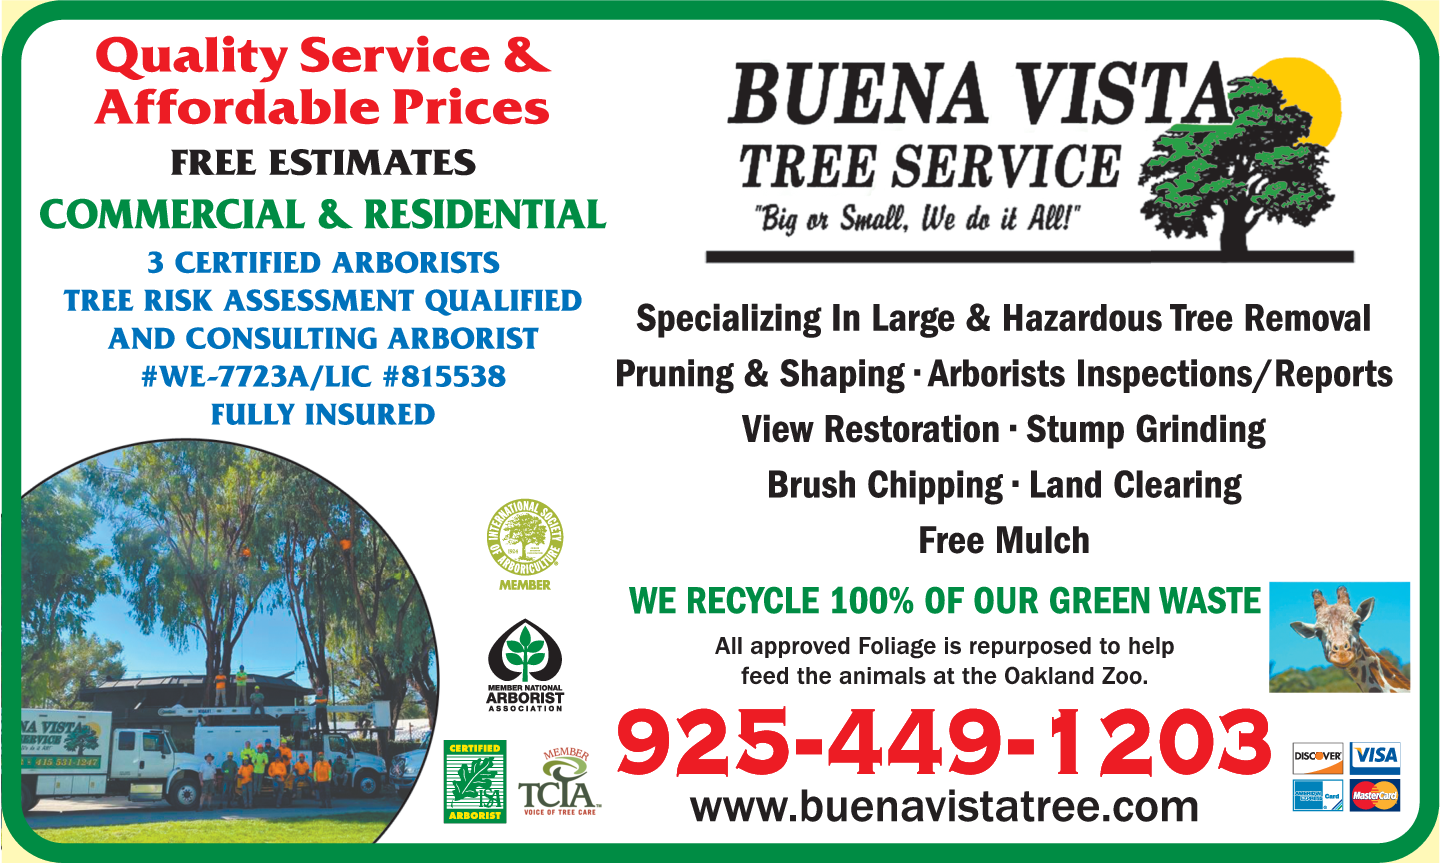 Buena Vista Tree Service